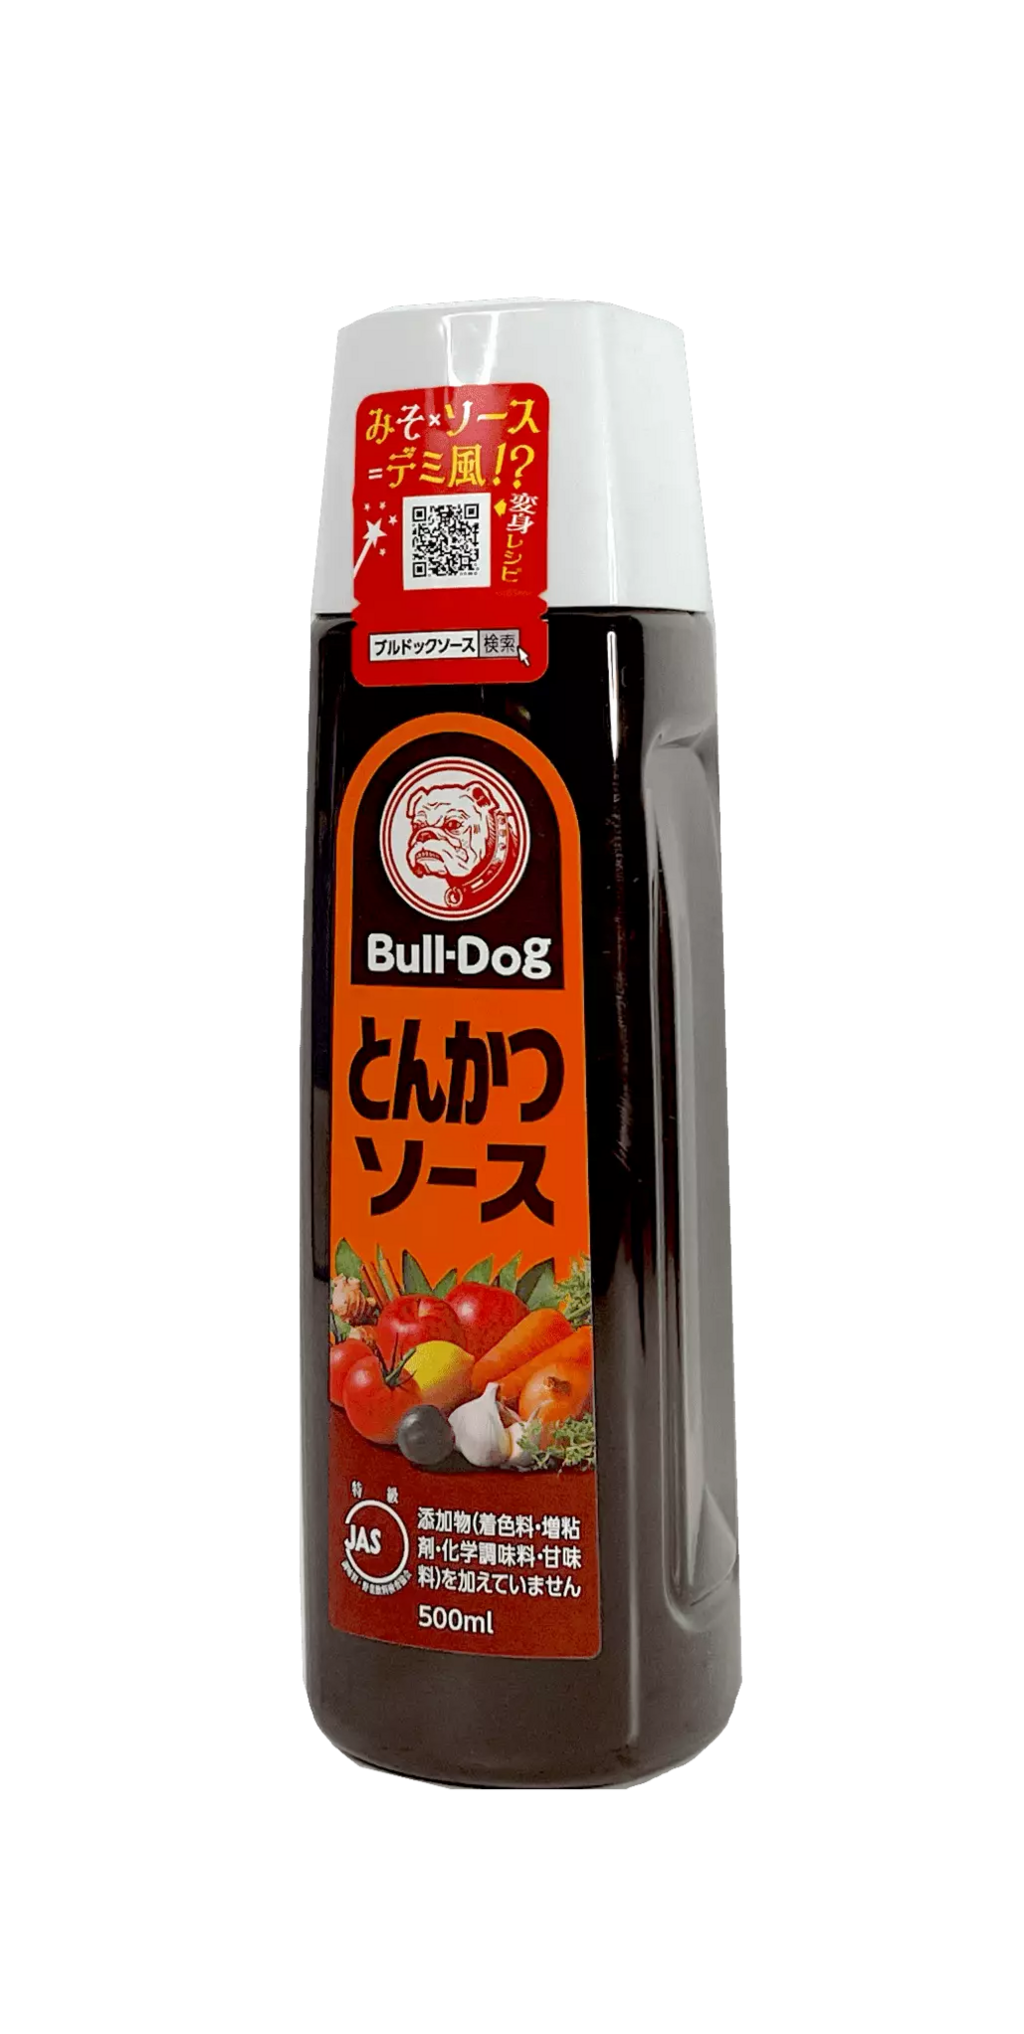 Tonkatsu 炸猪排酱 500ml Bull-Dog 日本